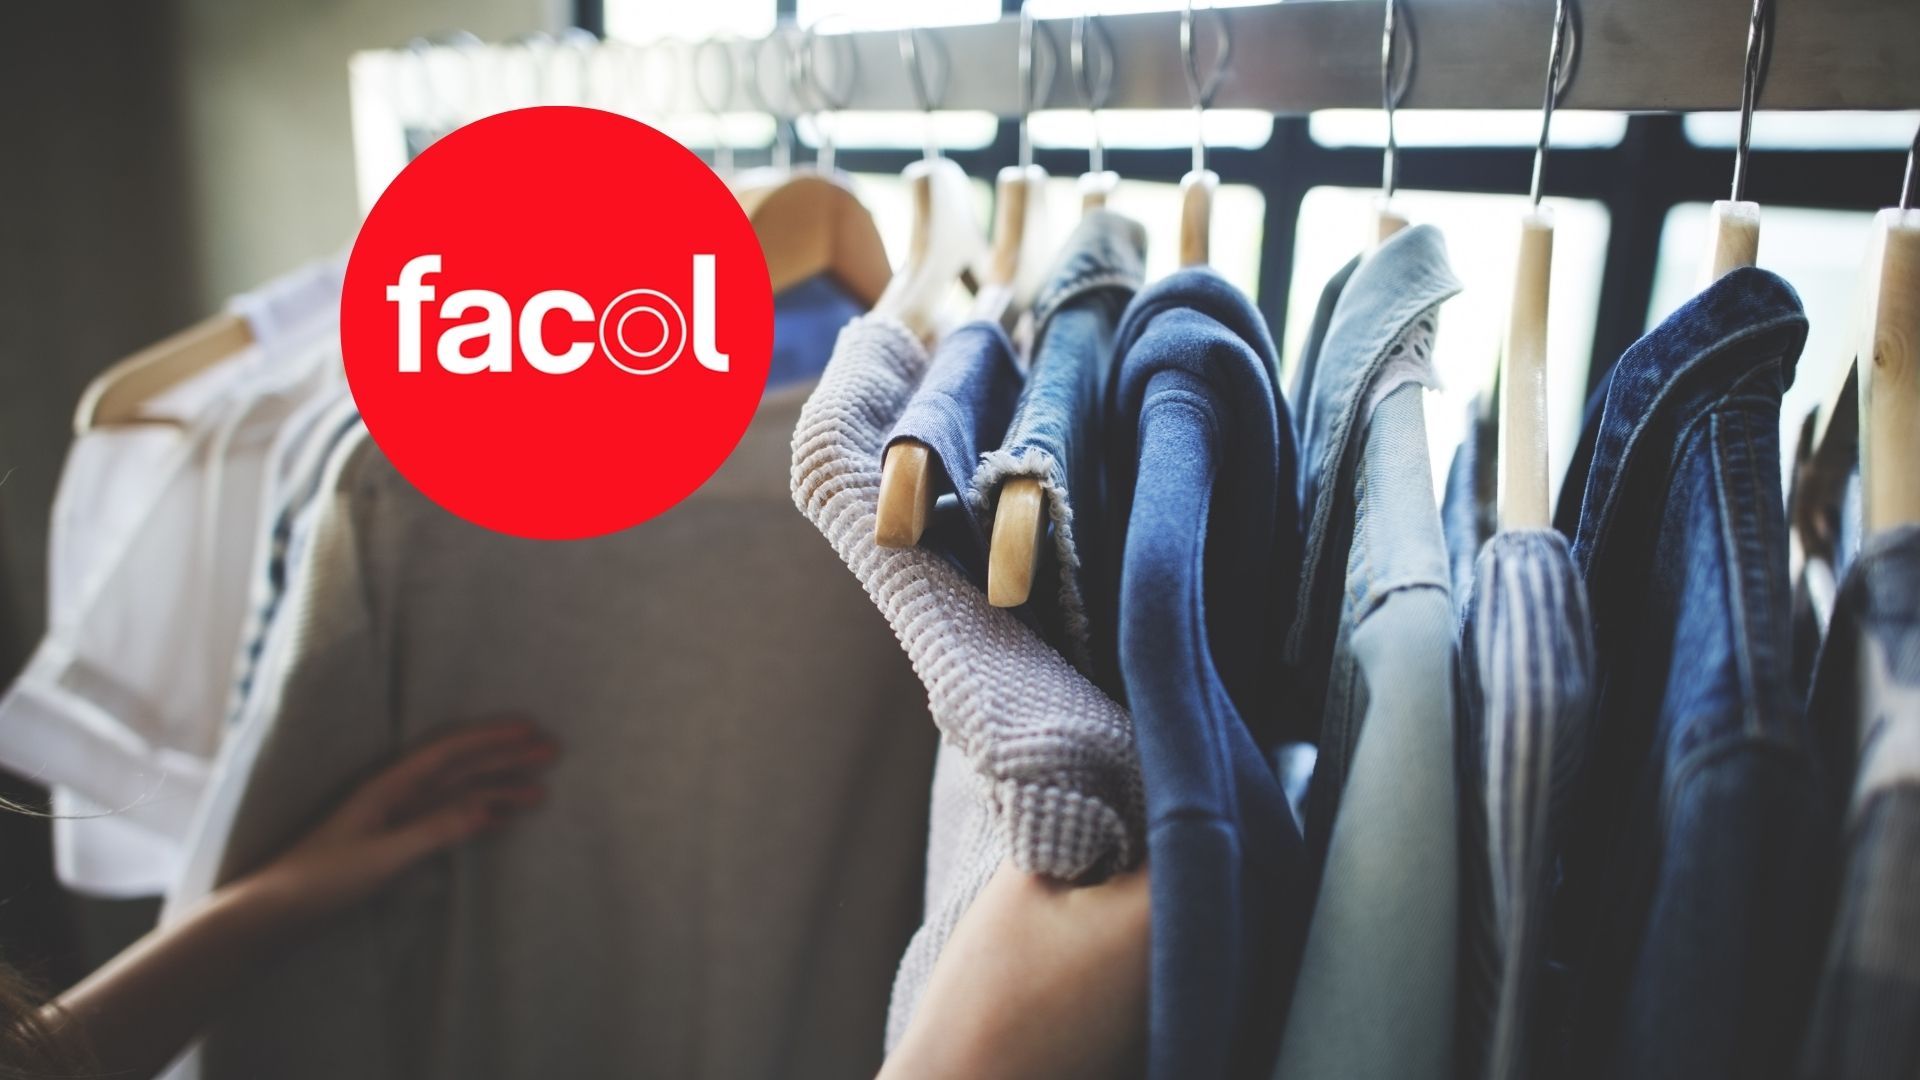 Facol aún tiene un 'outlet' secreto cerca a Bogotá y vende ropa con descuentos